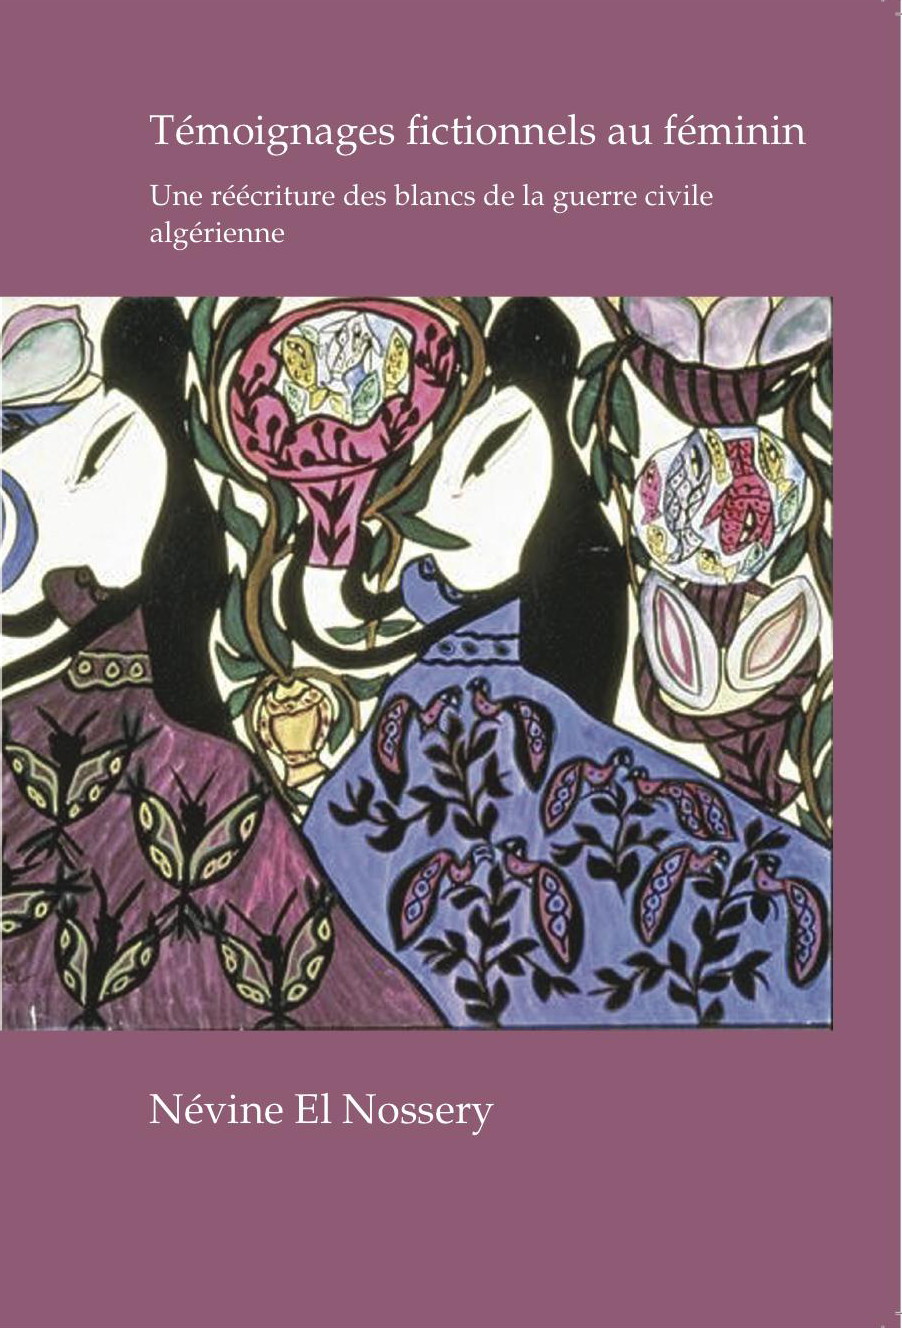 Névine El Nossery, Témoignages fictionnels au féminin.